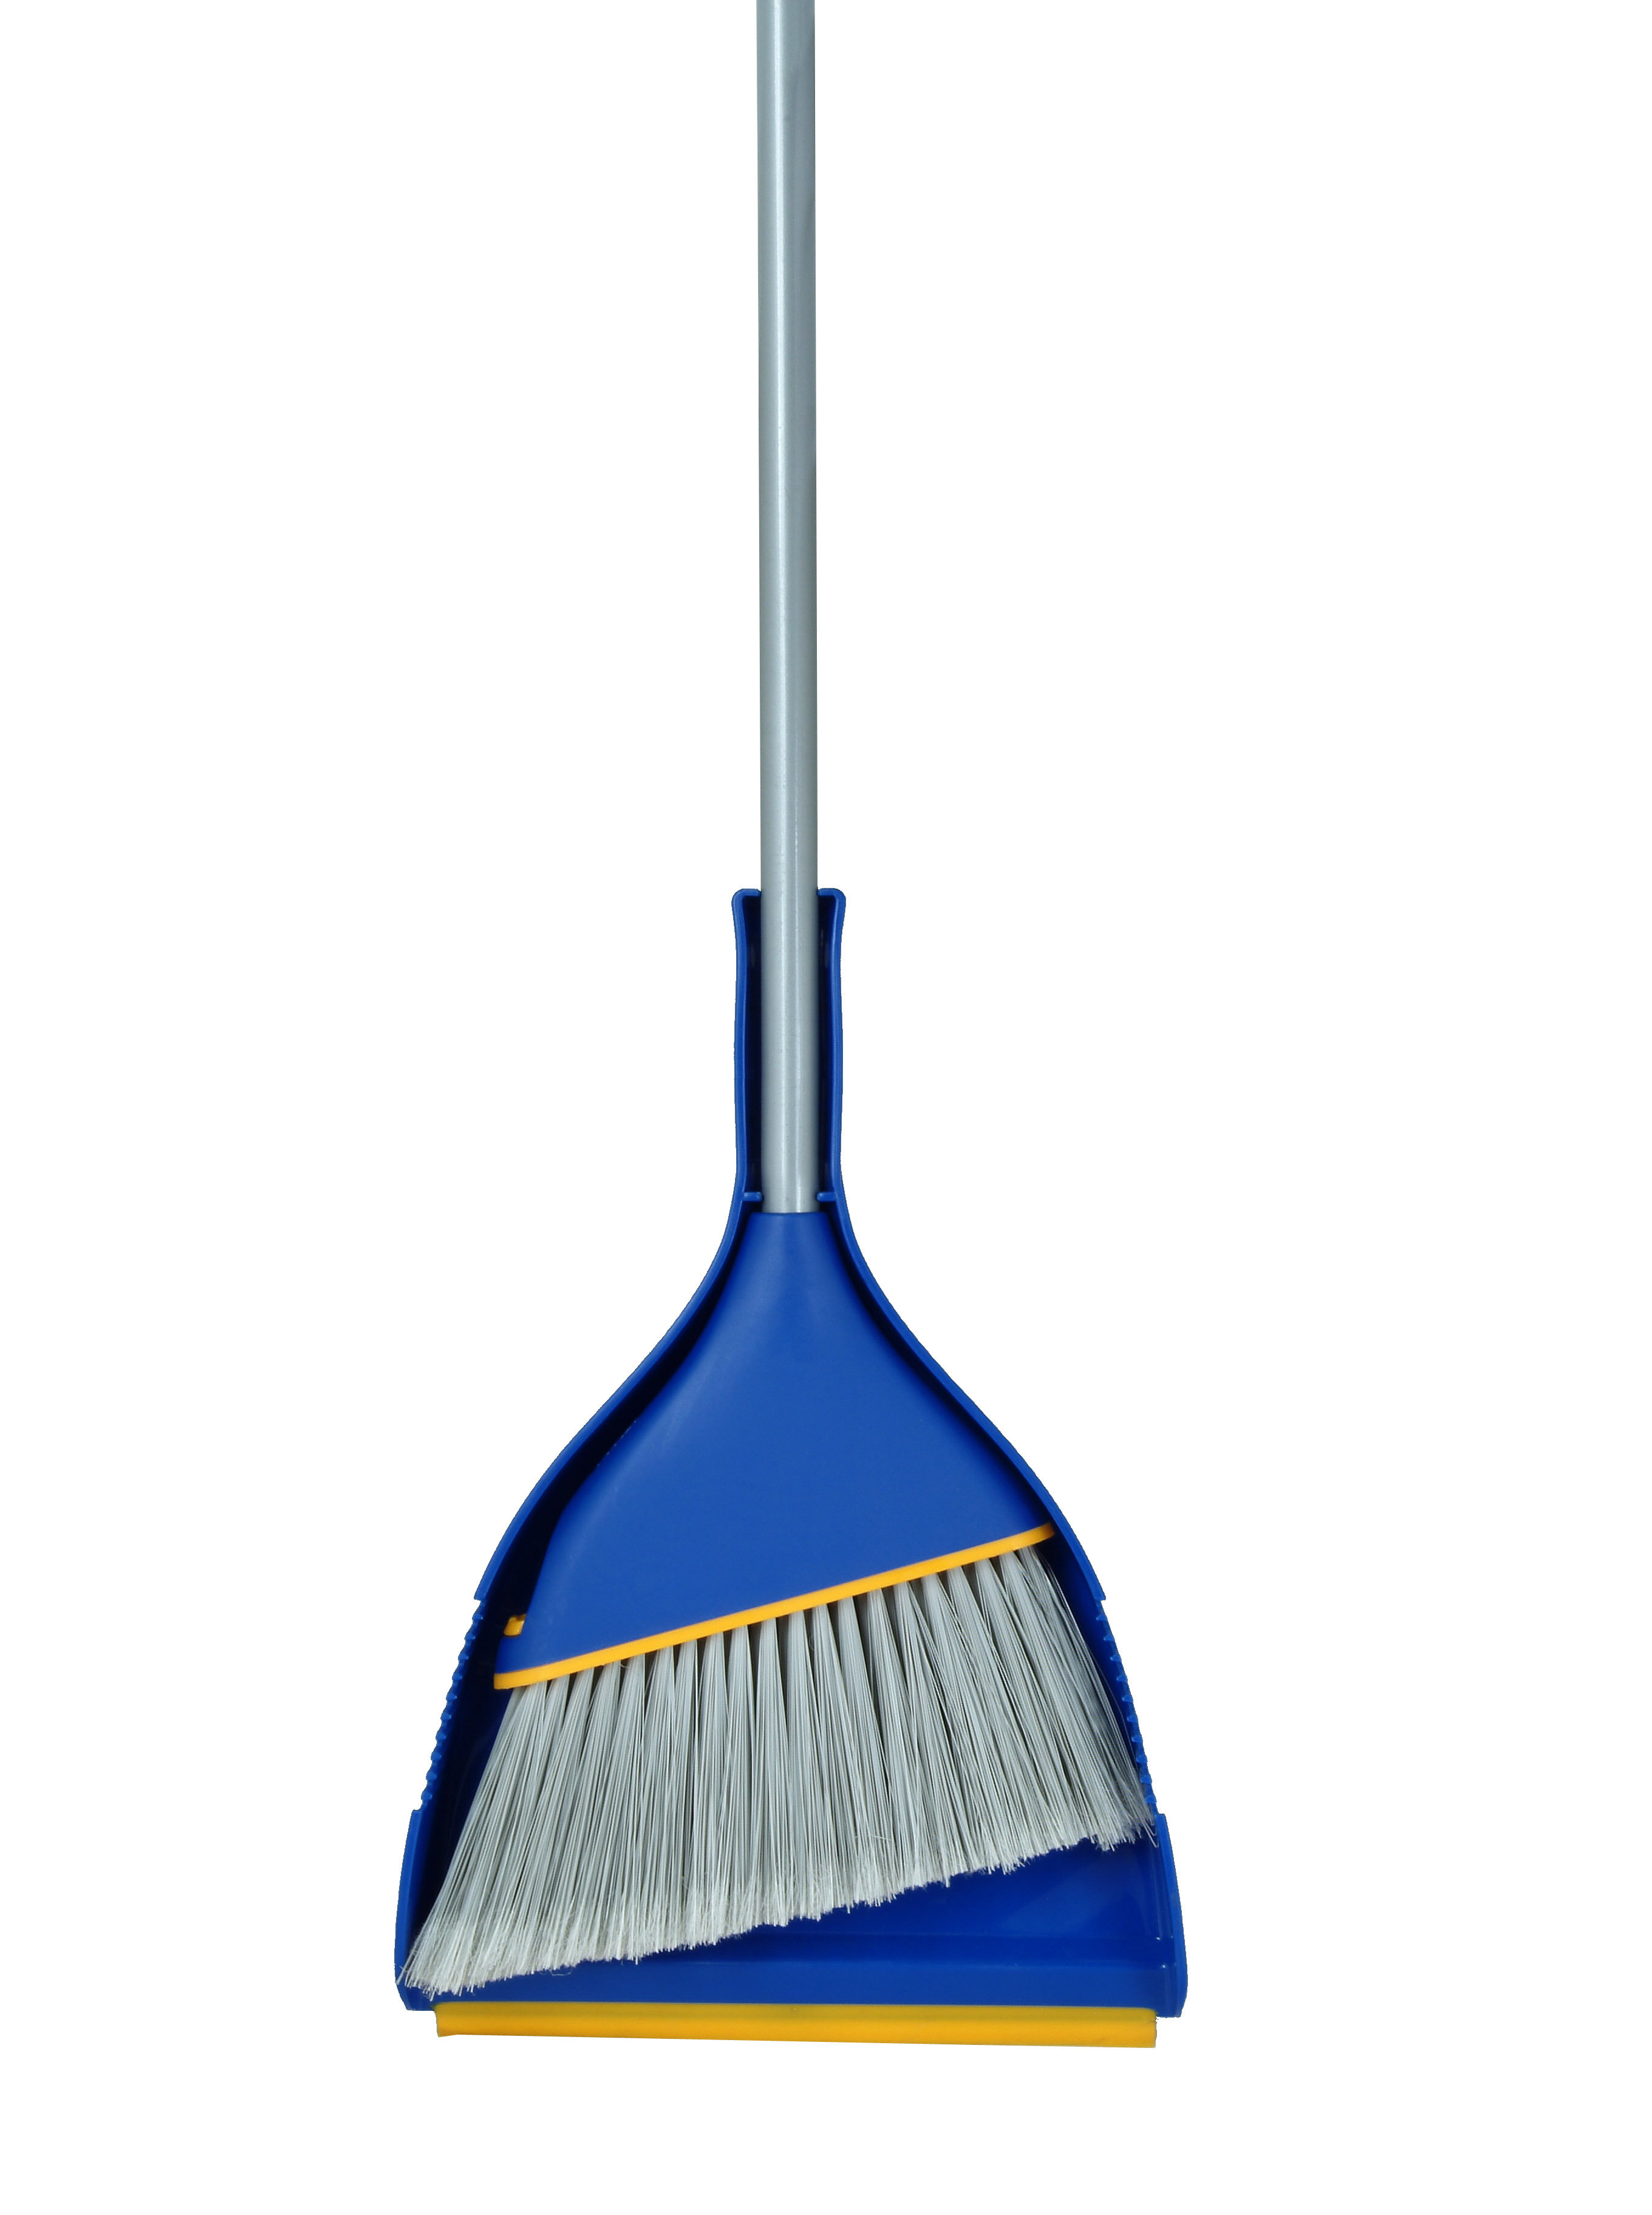 broom and shovel